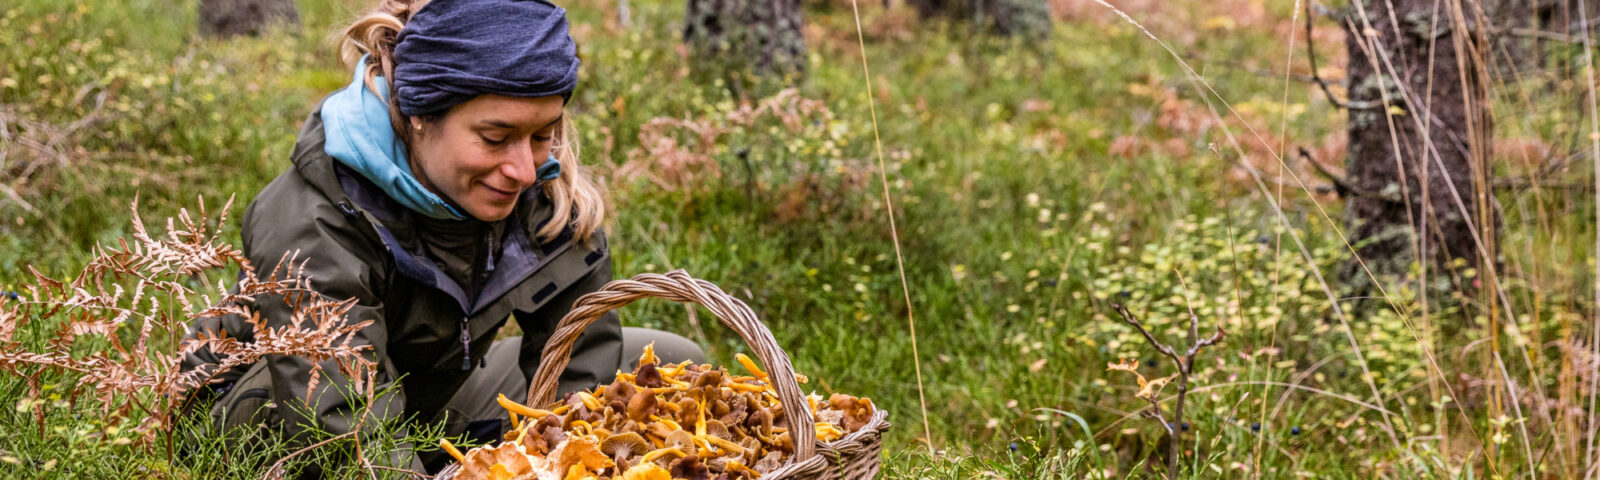 En kvinne står på huk i skogen og kikker på en stor kurv full av kantereller.